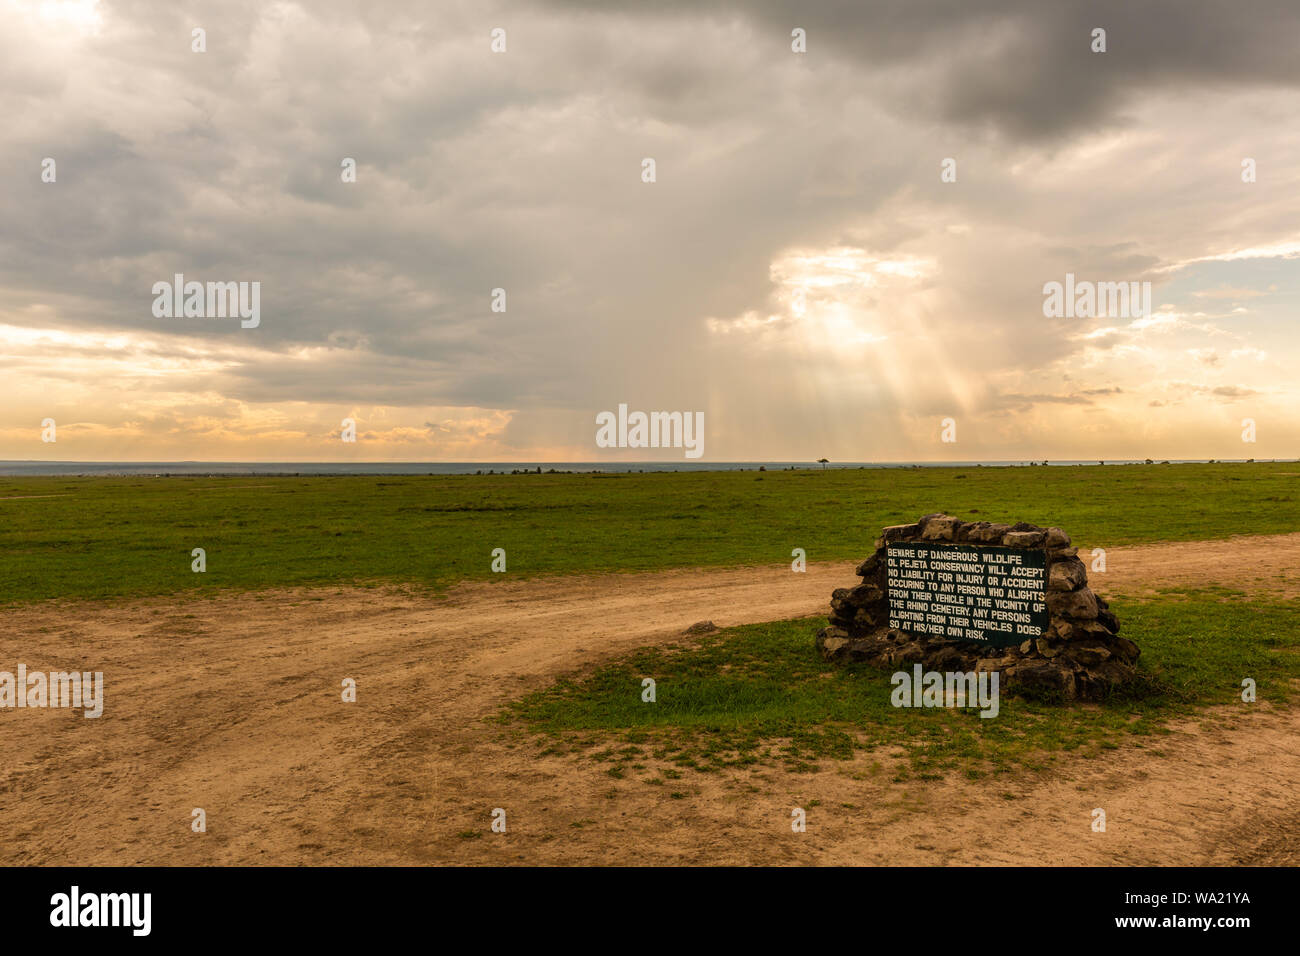 Ol Pejeta Conservancy, Laikipia County, Kenia - 12. Juni, 2019: Farbe Landschaft Foto von Ol Pejeta conservancy Grünland im Hintergrund mit. Stockfoto